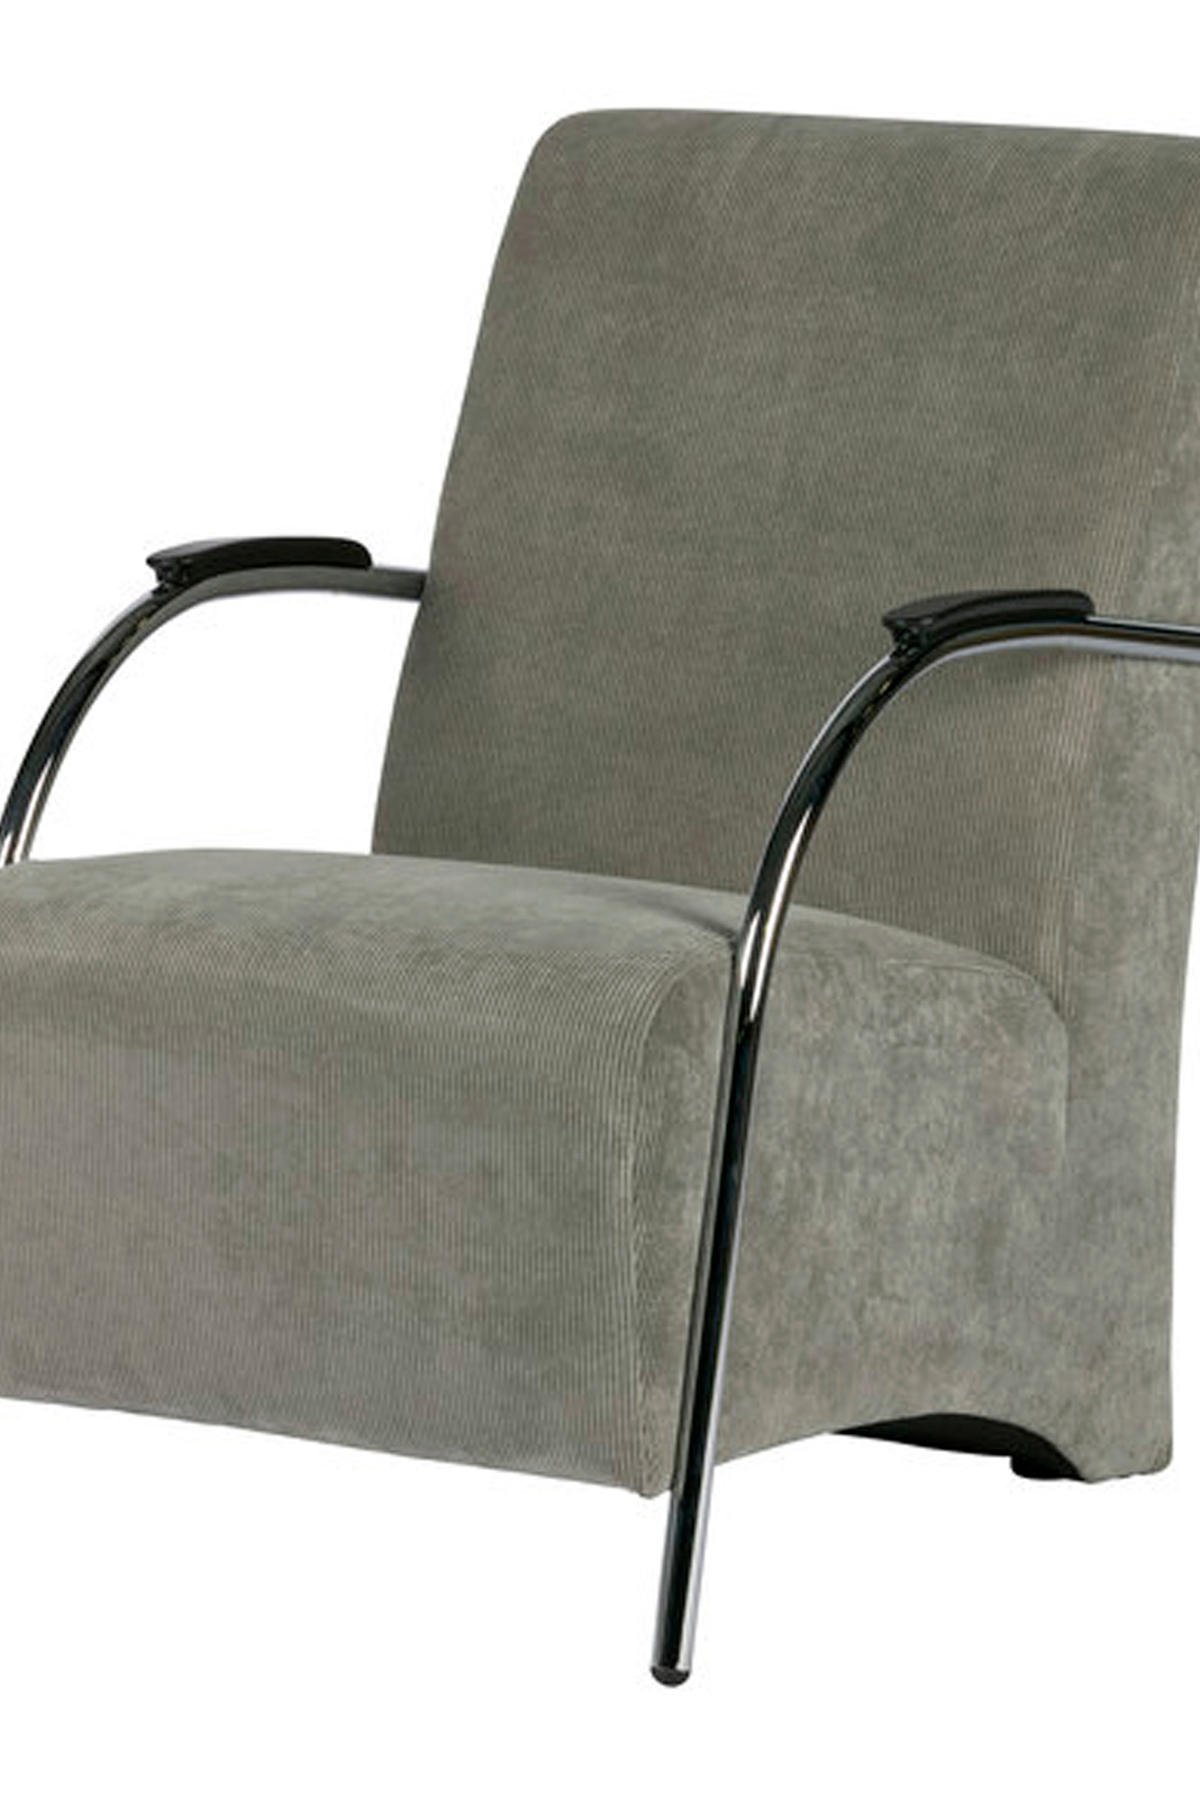 Knooppunt spek voorbeeld Woood fauteuil Halifax | wehkamp